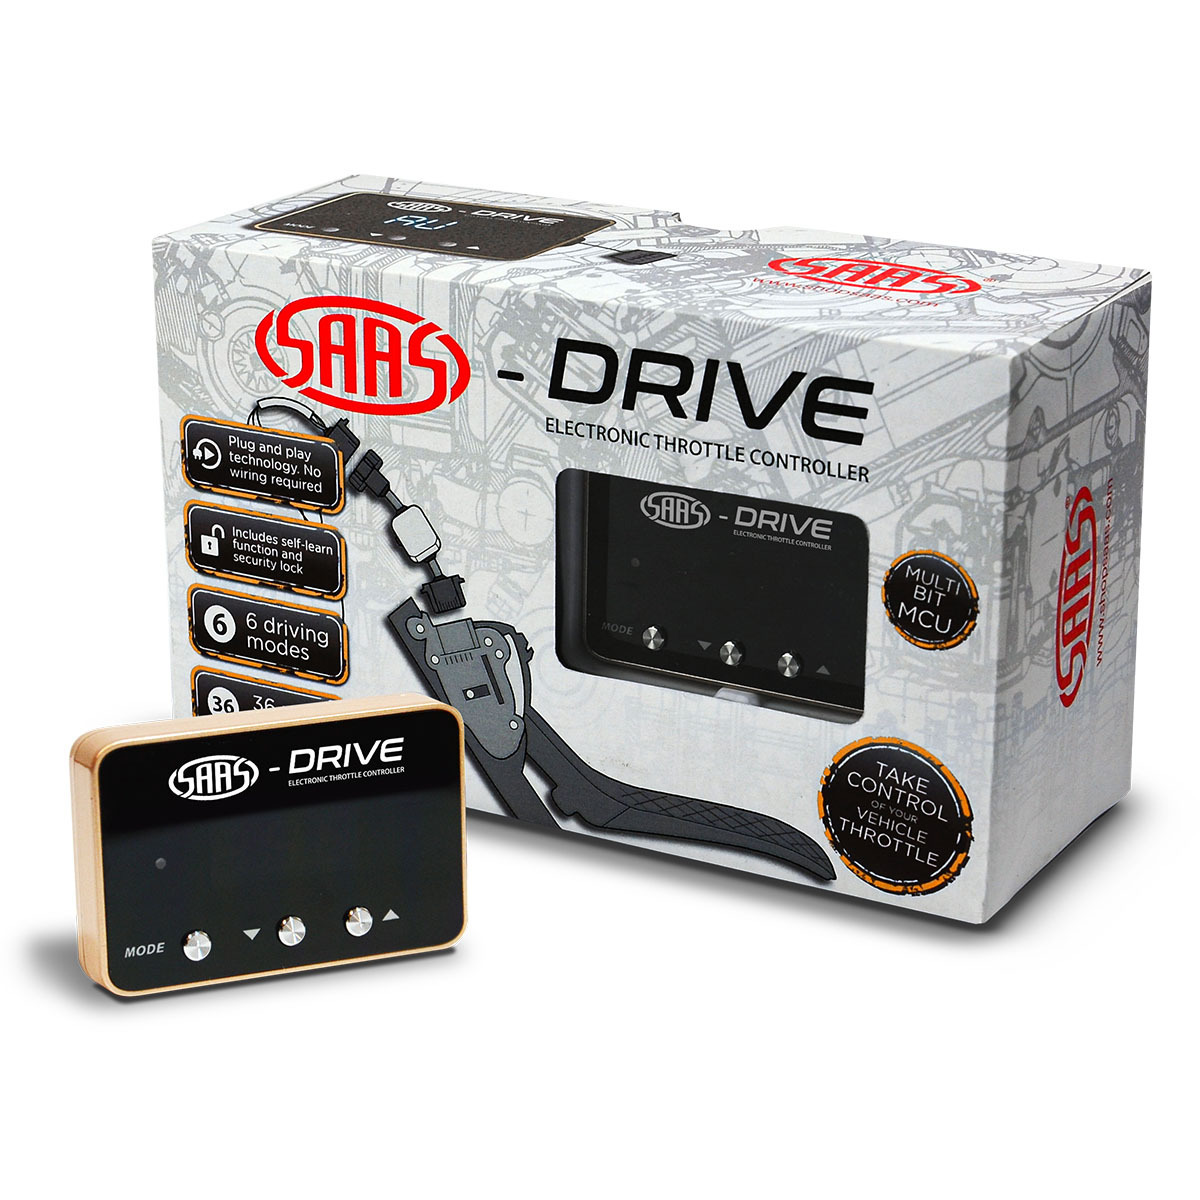 SAAS-Drive Suzuki Solio 5th Gen 2012 - 2017 Throttle Controller 